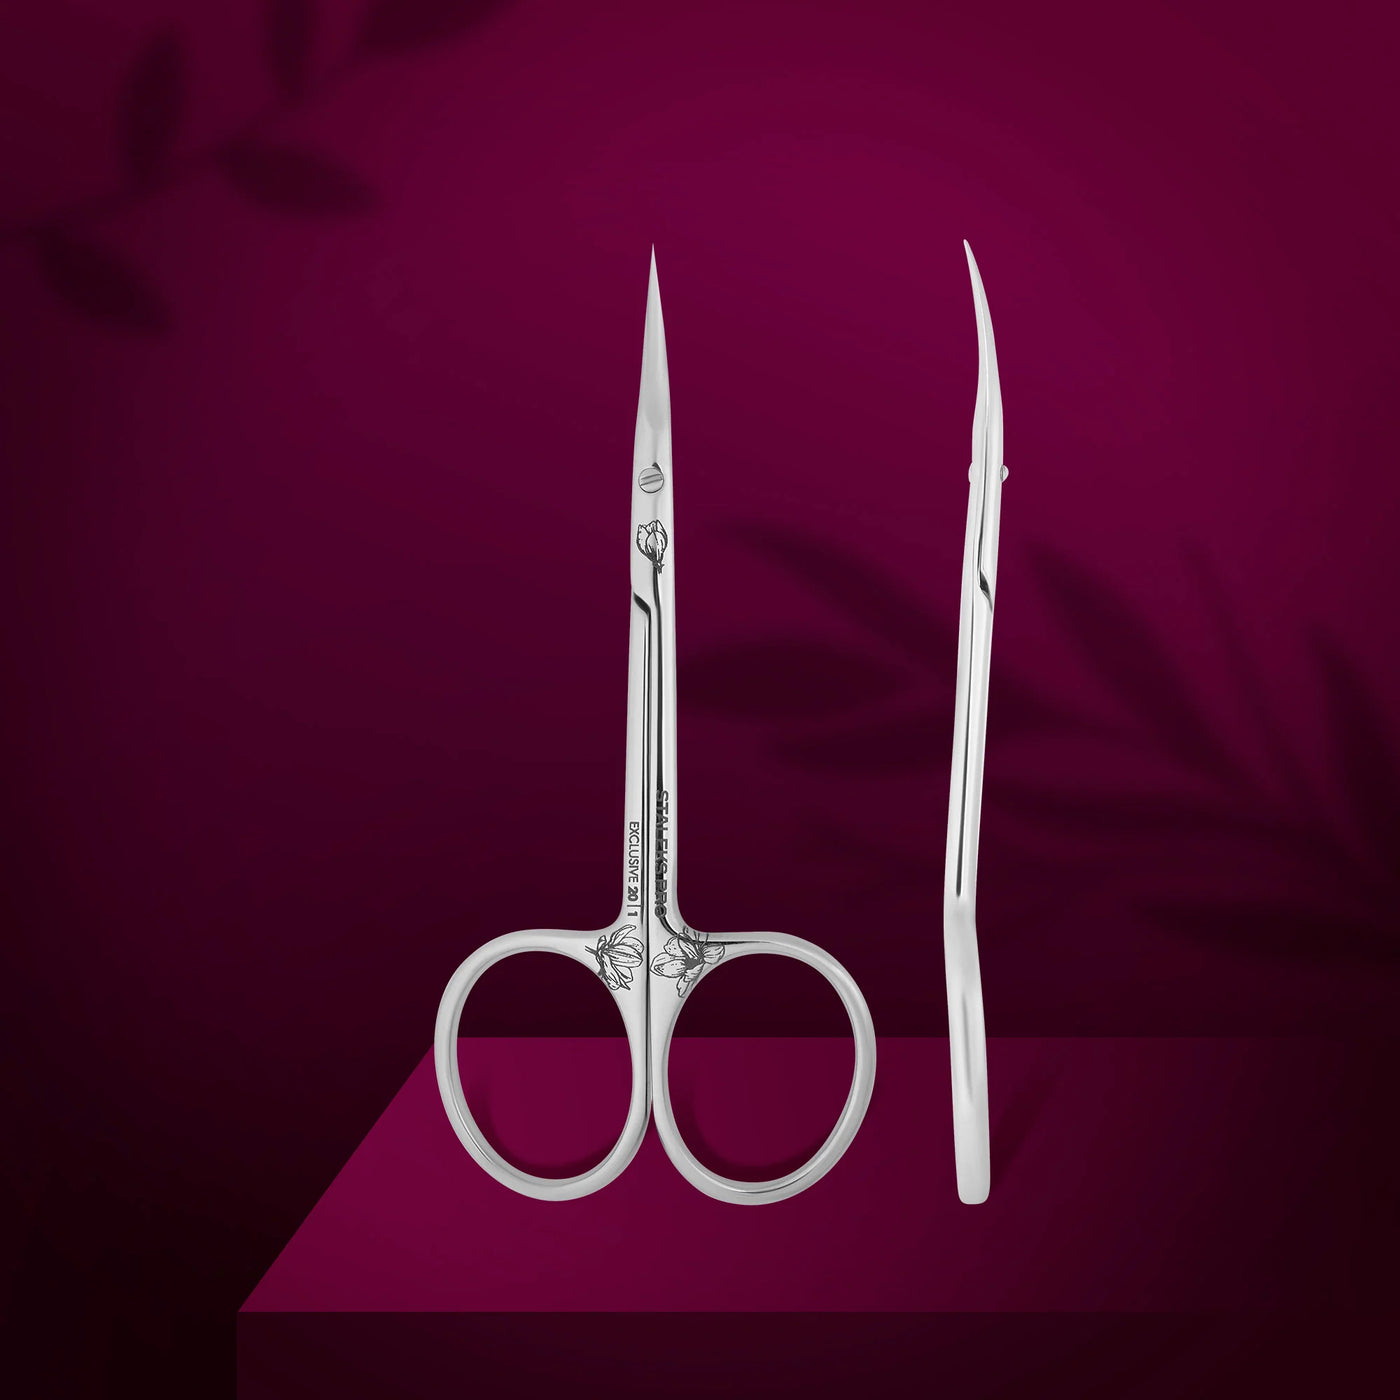 EXCLUSIVE 20 TYPE 1  - Cuticle Scissors